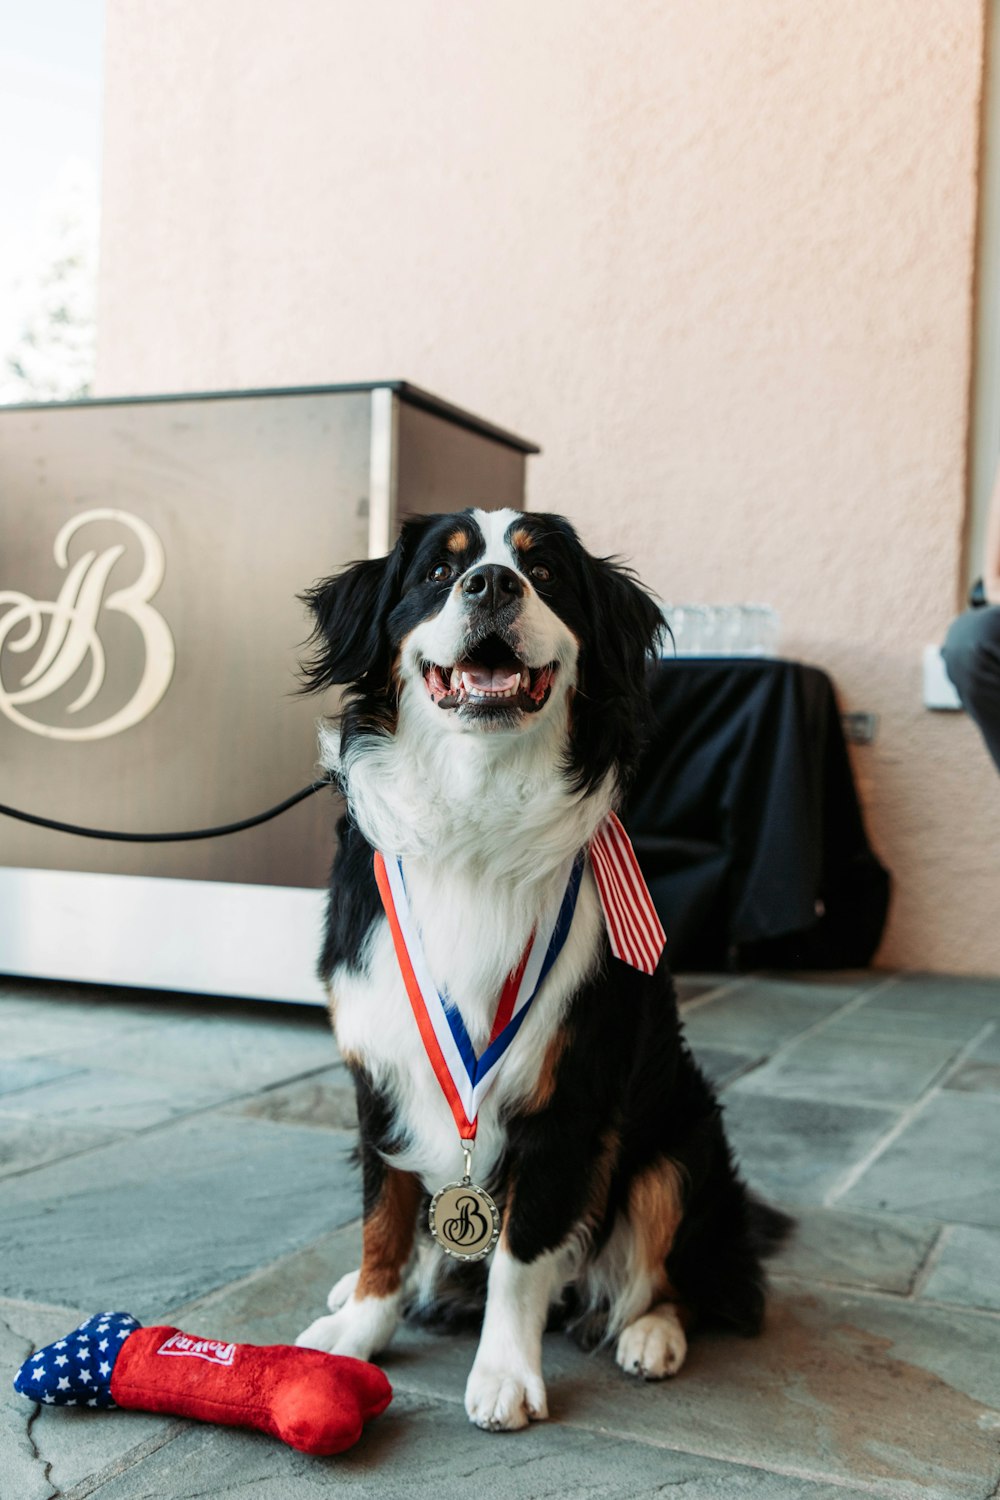 Un cane seduto a terra con una medaglia al collo foto – Stati uniti  d'america Immagine gratuita su Unsplash